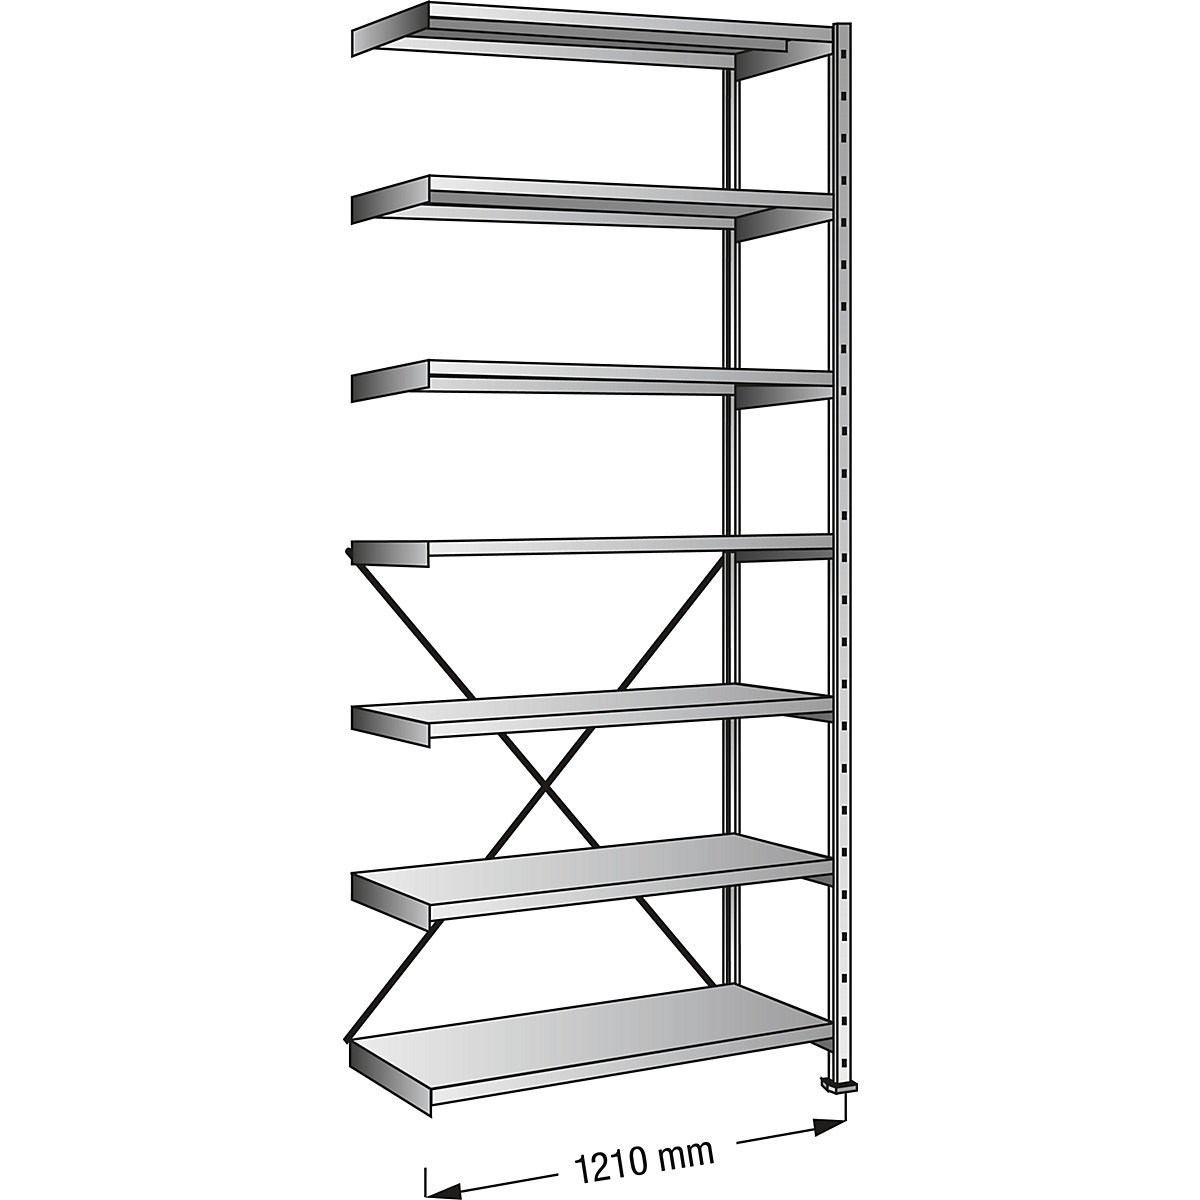 Boltless shelving unit, zinc plated, 7 shelves, height 2640 mm, shelf width 1200 mm, depth 700 mm, extension shelf unit